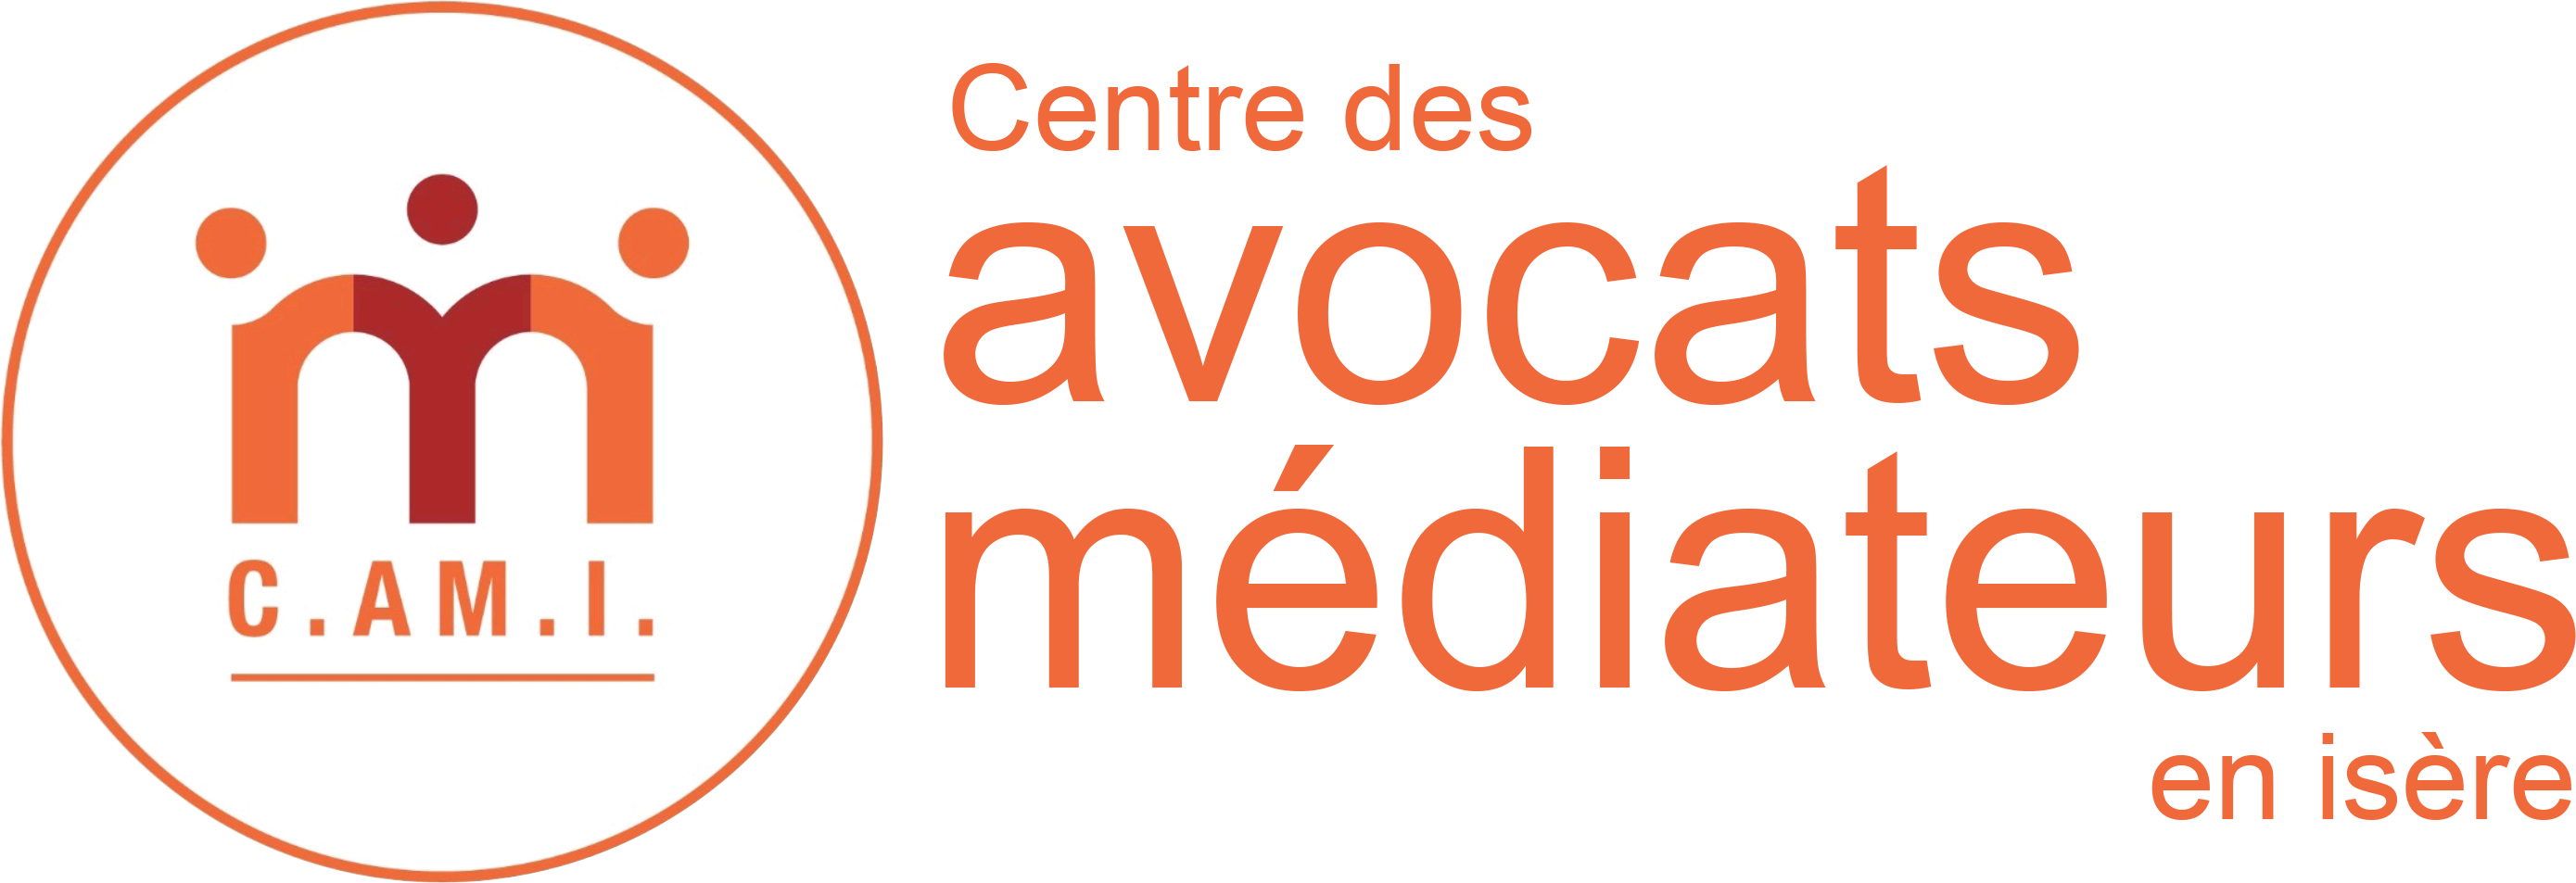 CAMI - Centre de médiation des Avocats d'Isère